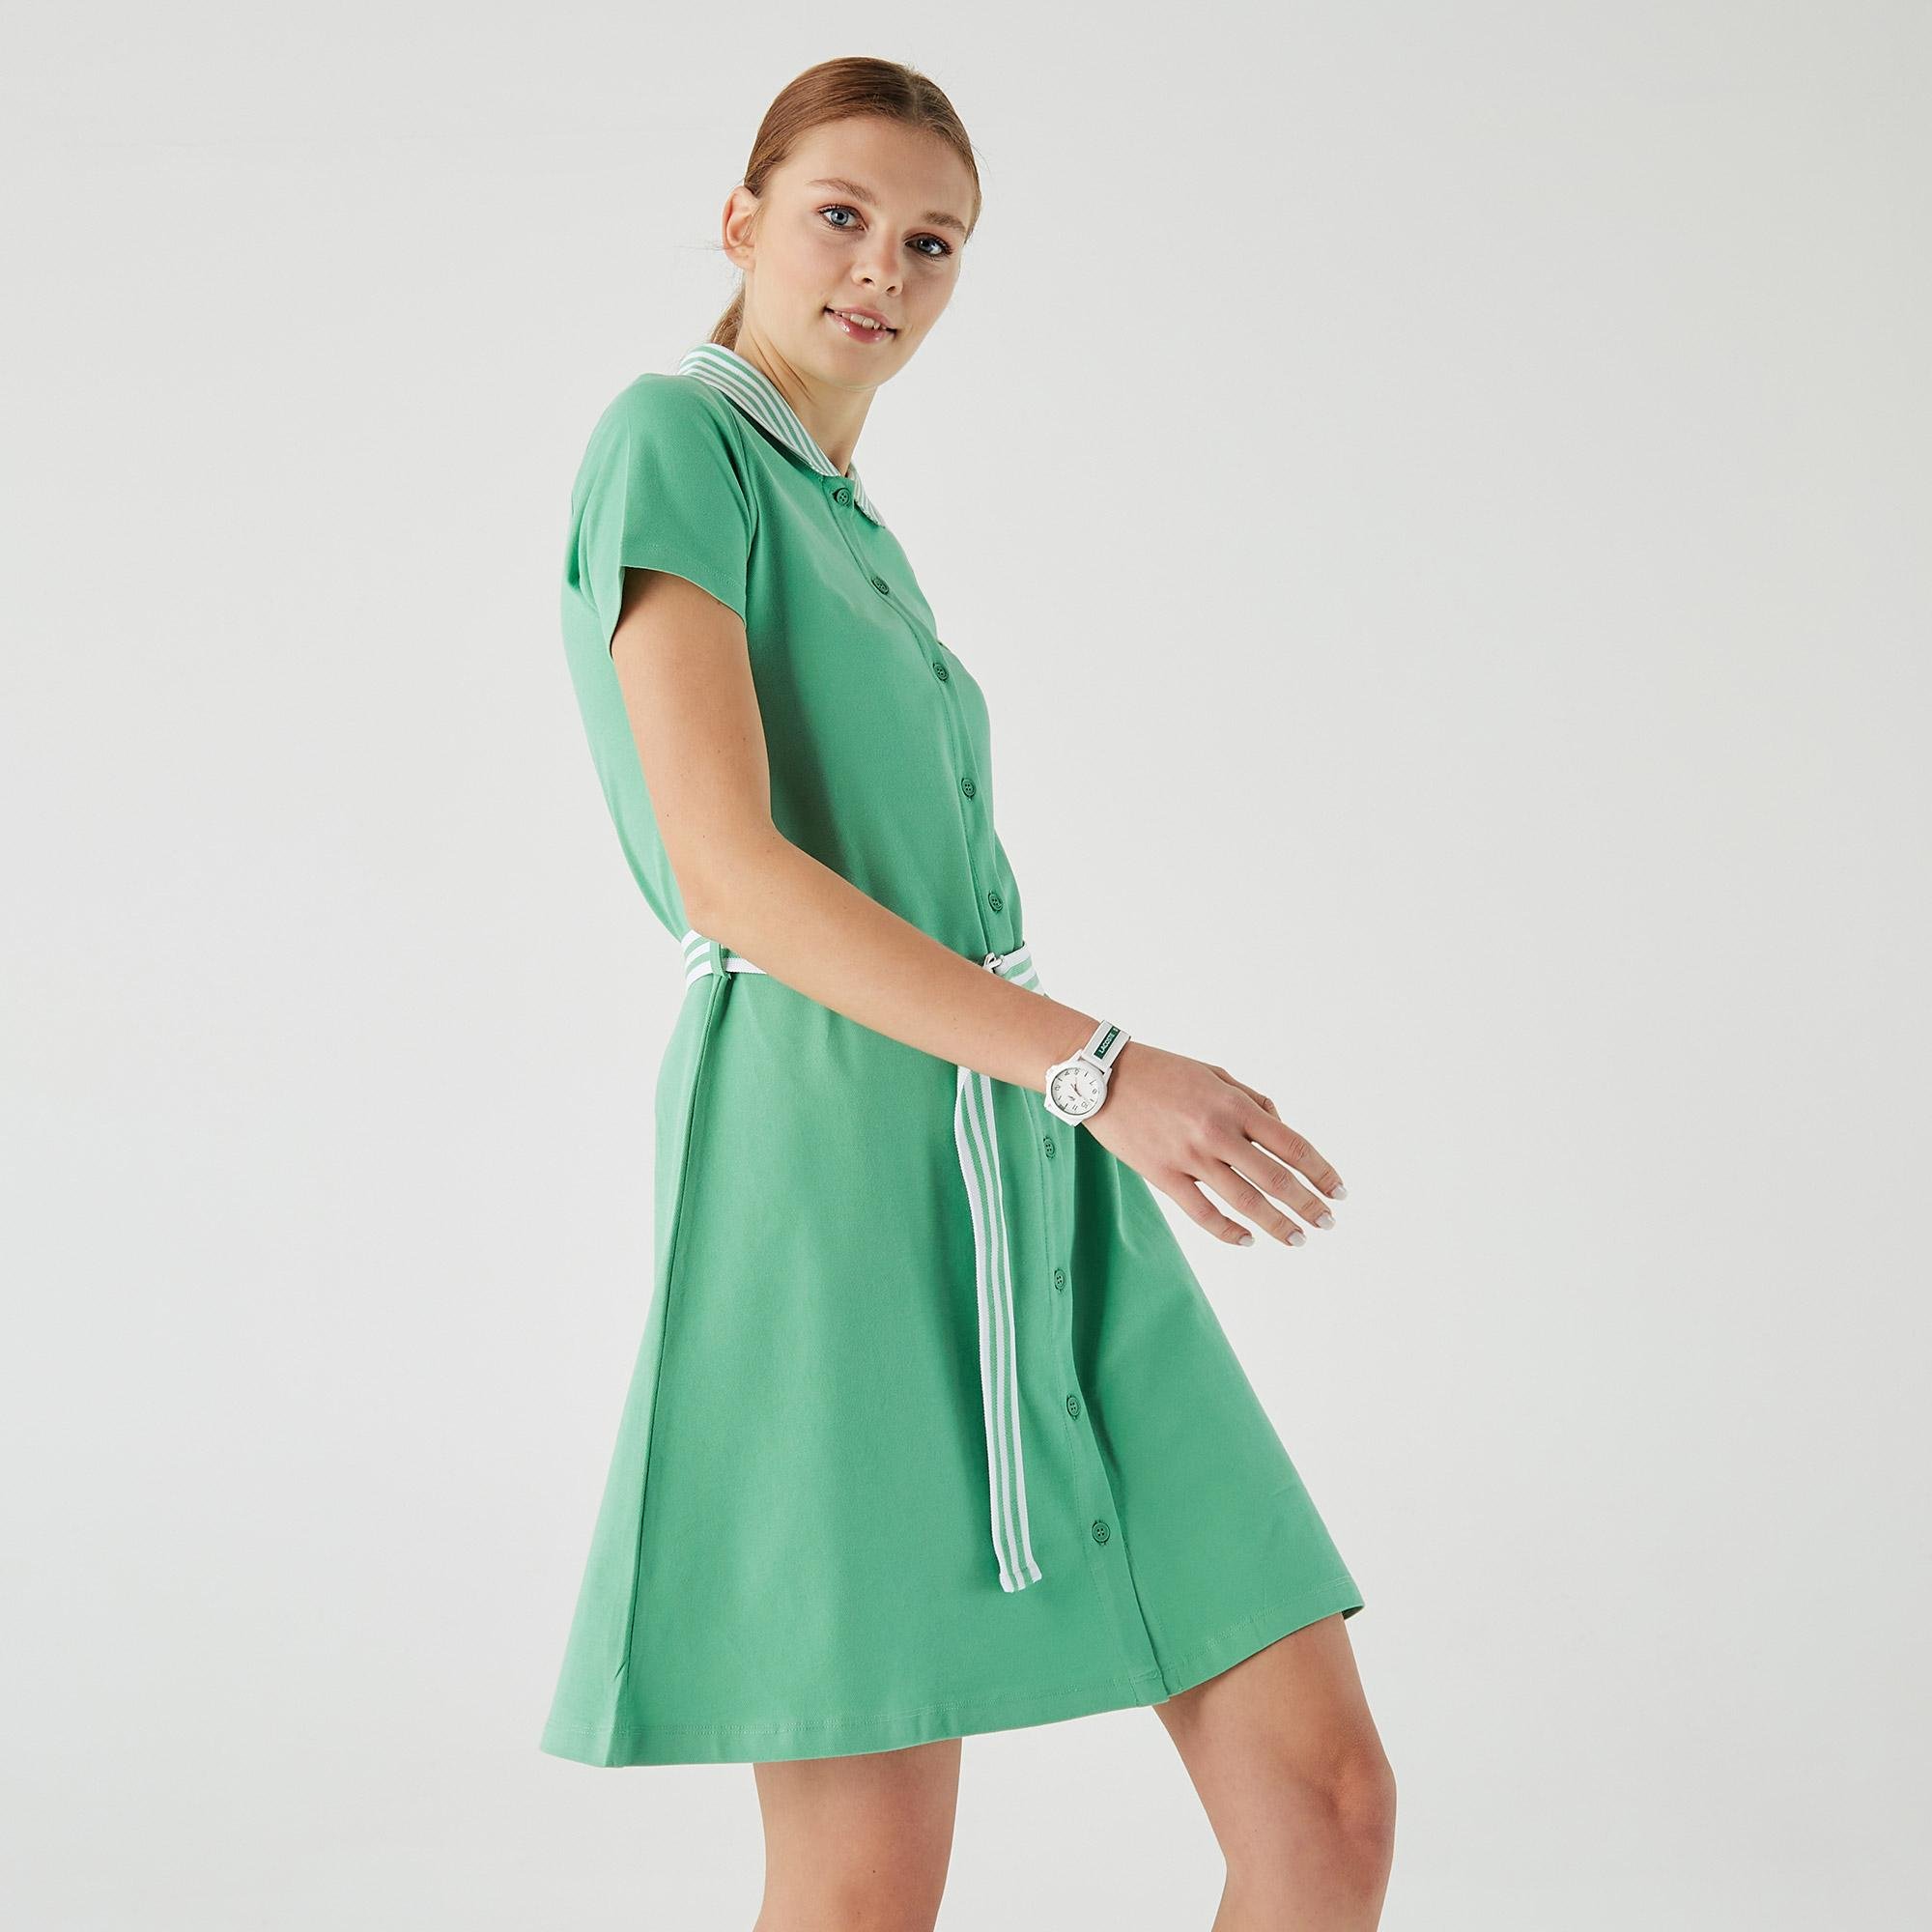 Lacoste Kadın Loose Fit Kısa Kollu Gömlek Yaka Yeşil Elbise